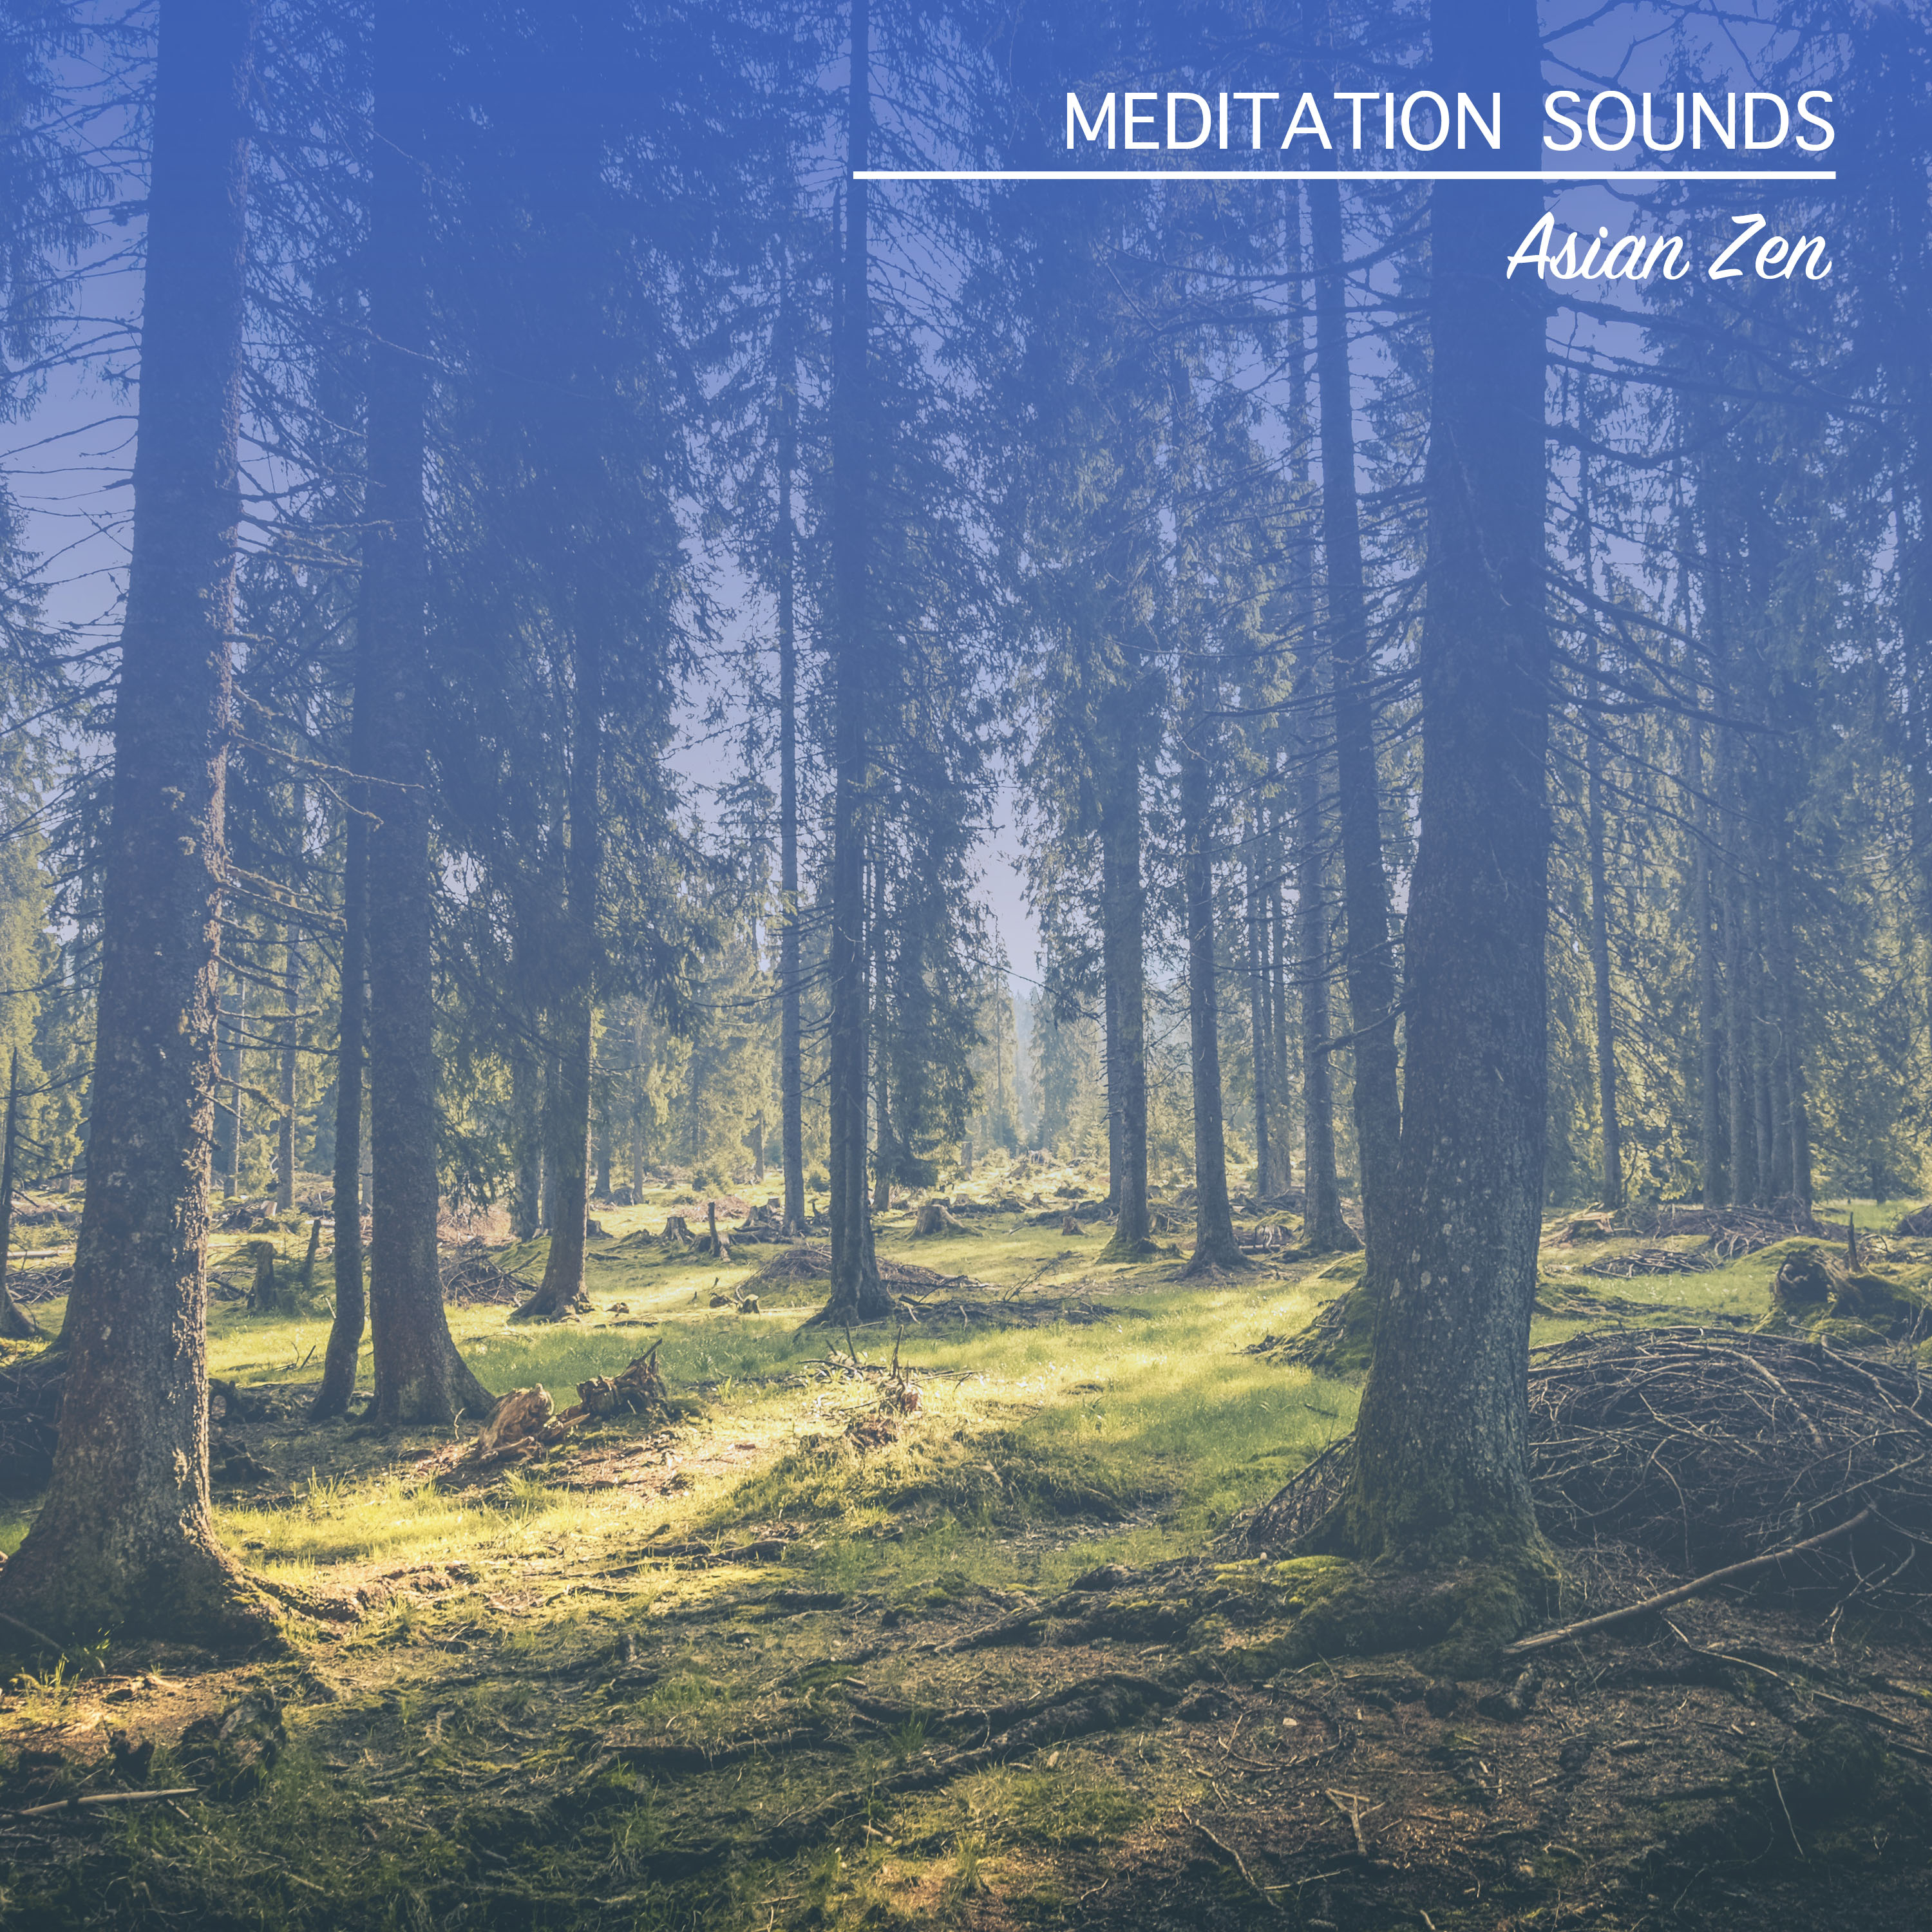 19 Meditation Sounds: Music from Asian Zen